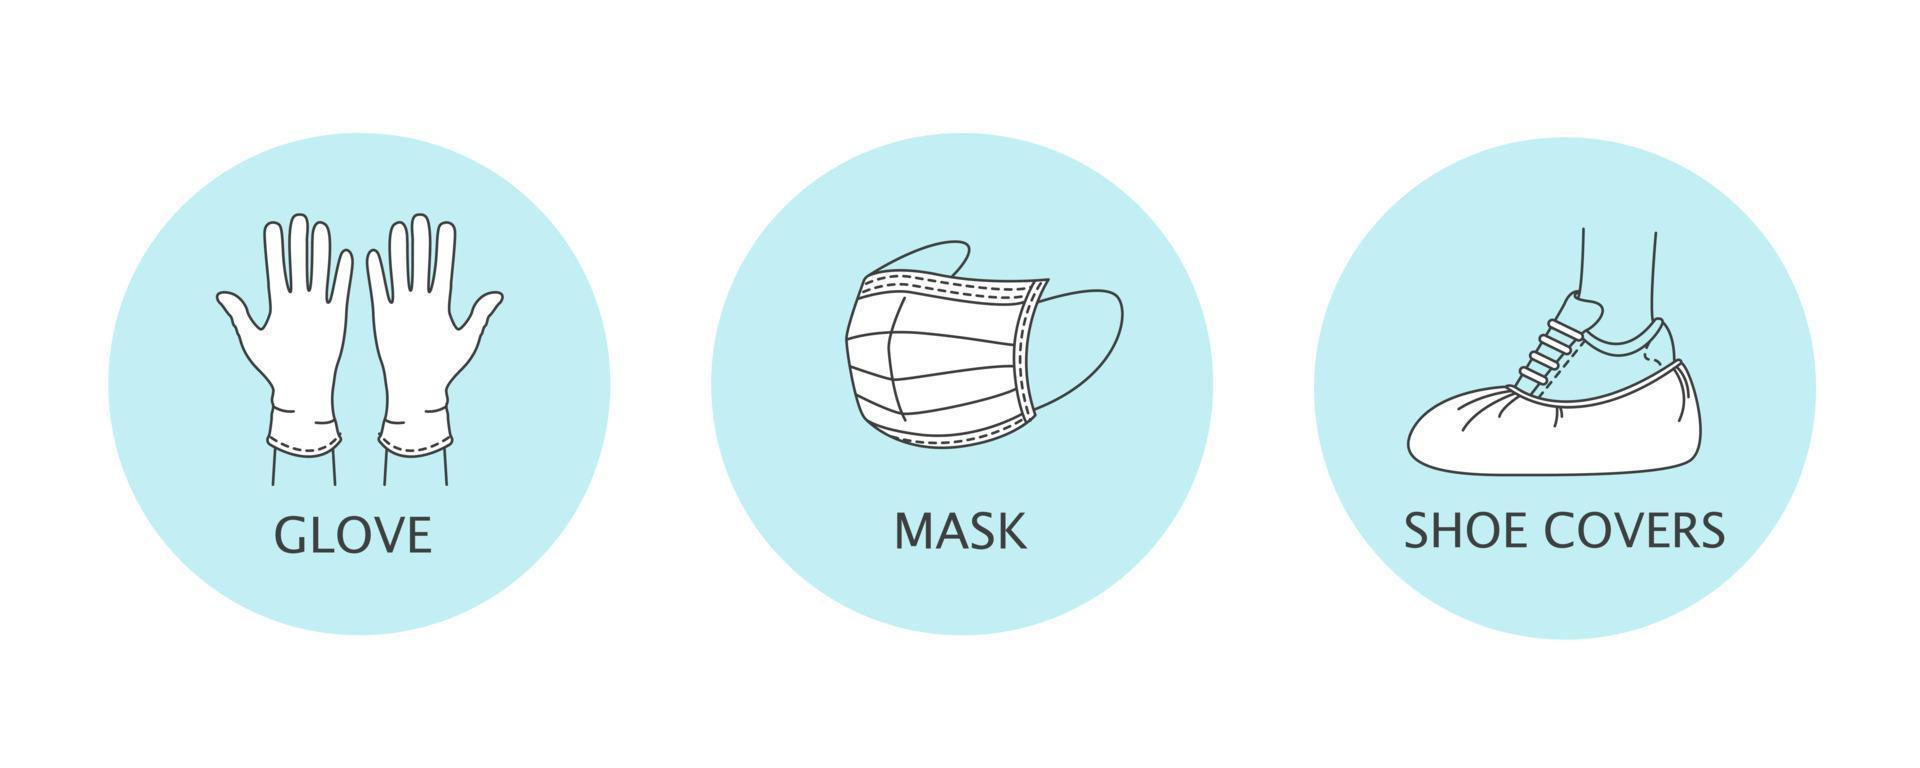 mascherina medica, guanti di gomma e copriscarpe. icone di igiene personale e protezione dai virus. illustrazione vettoriale